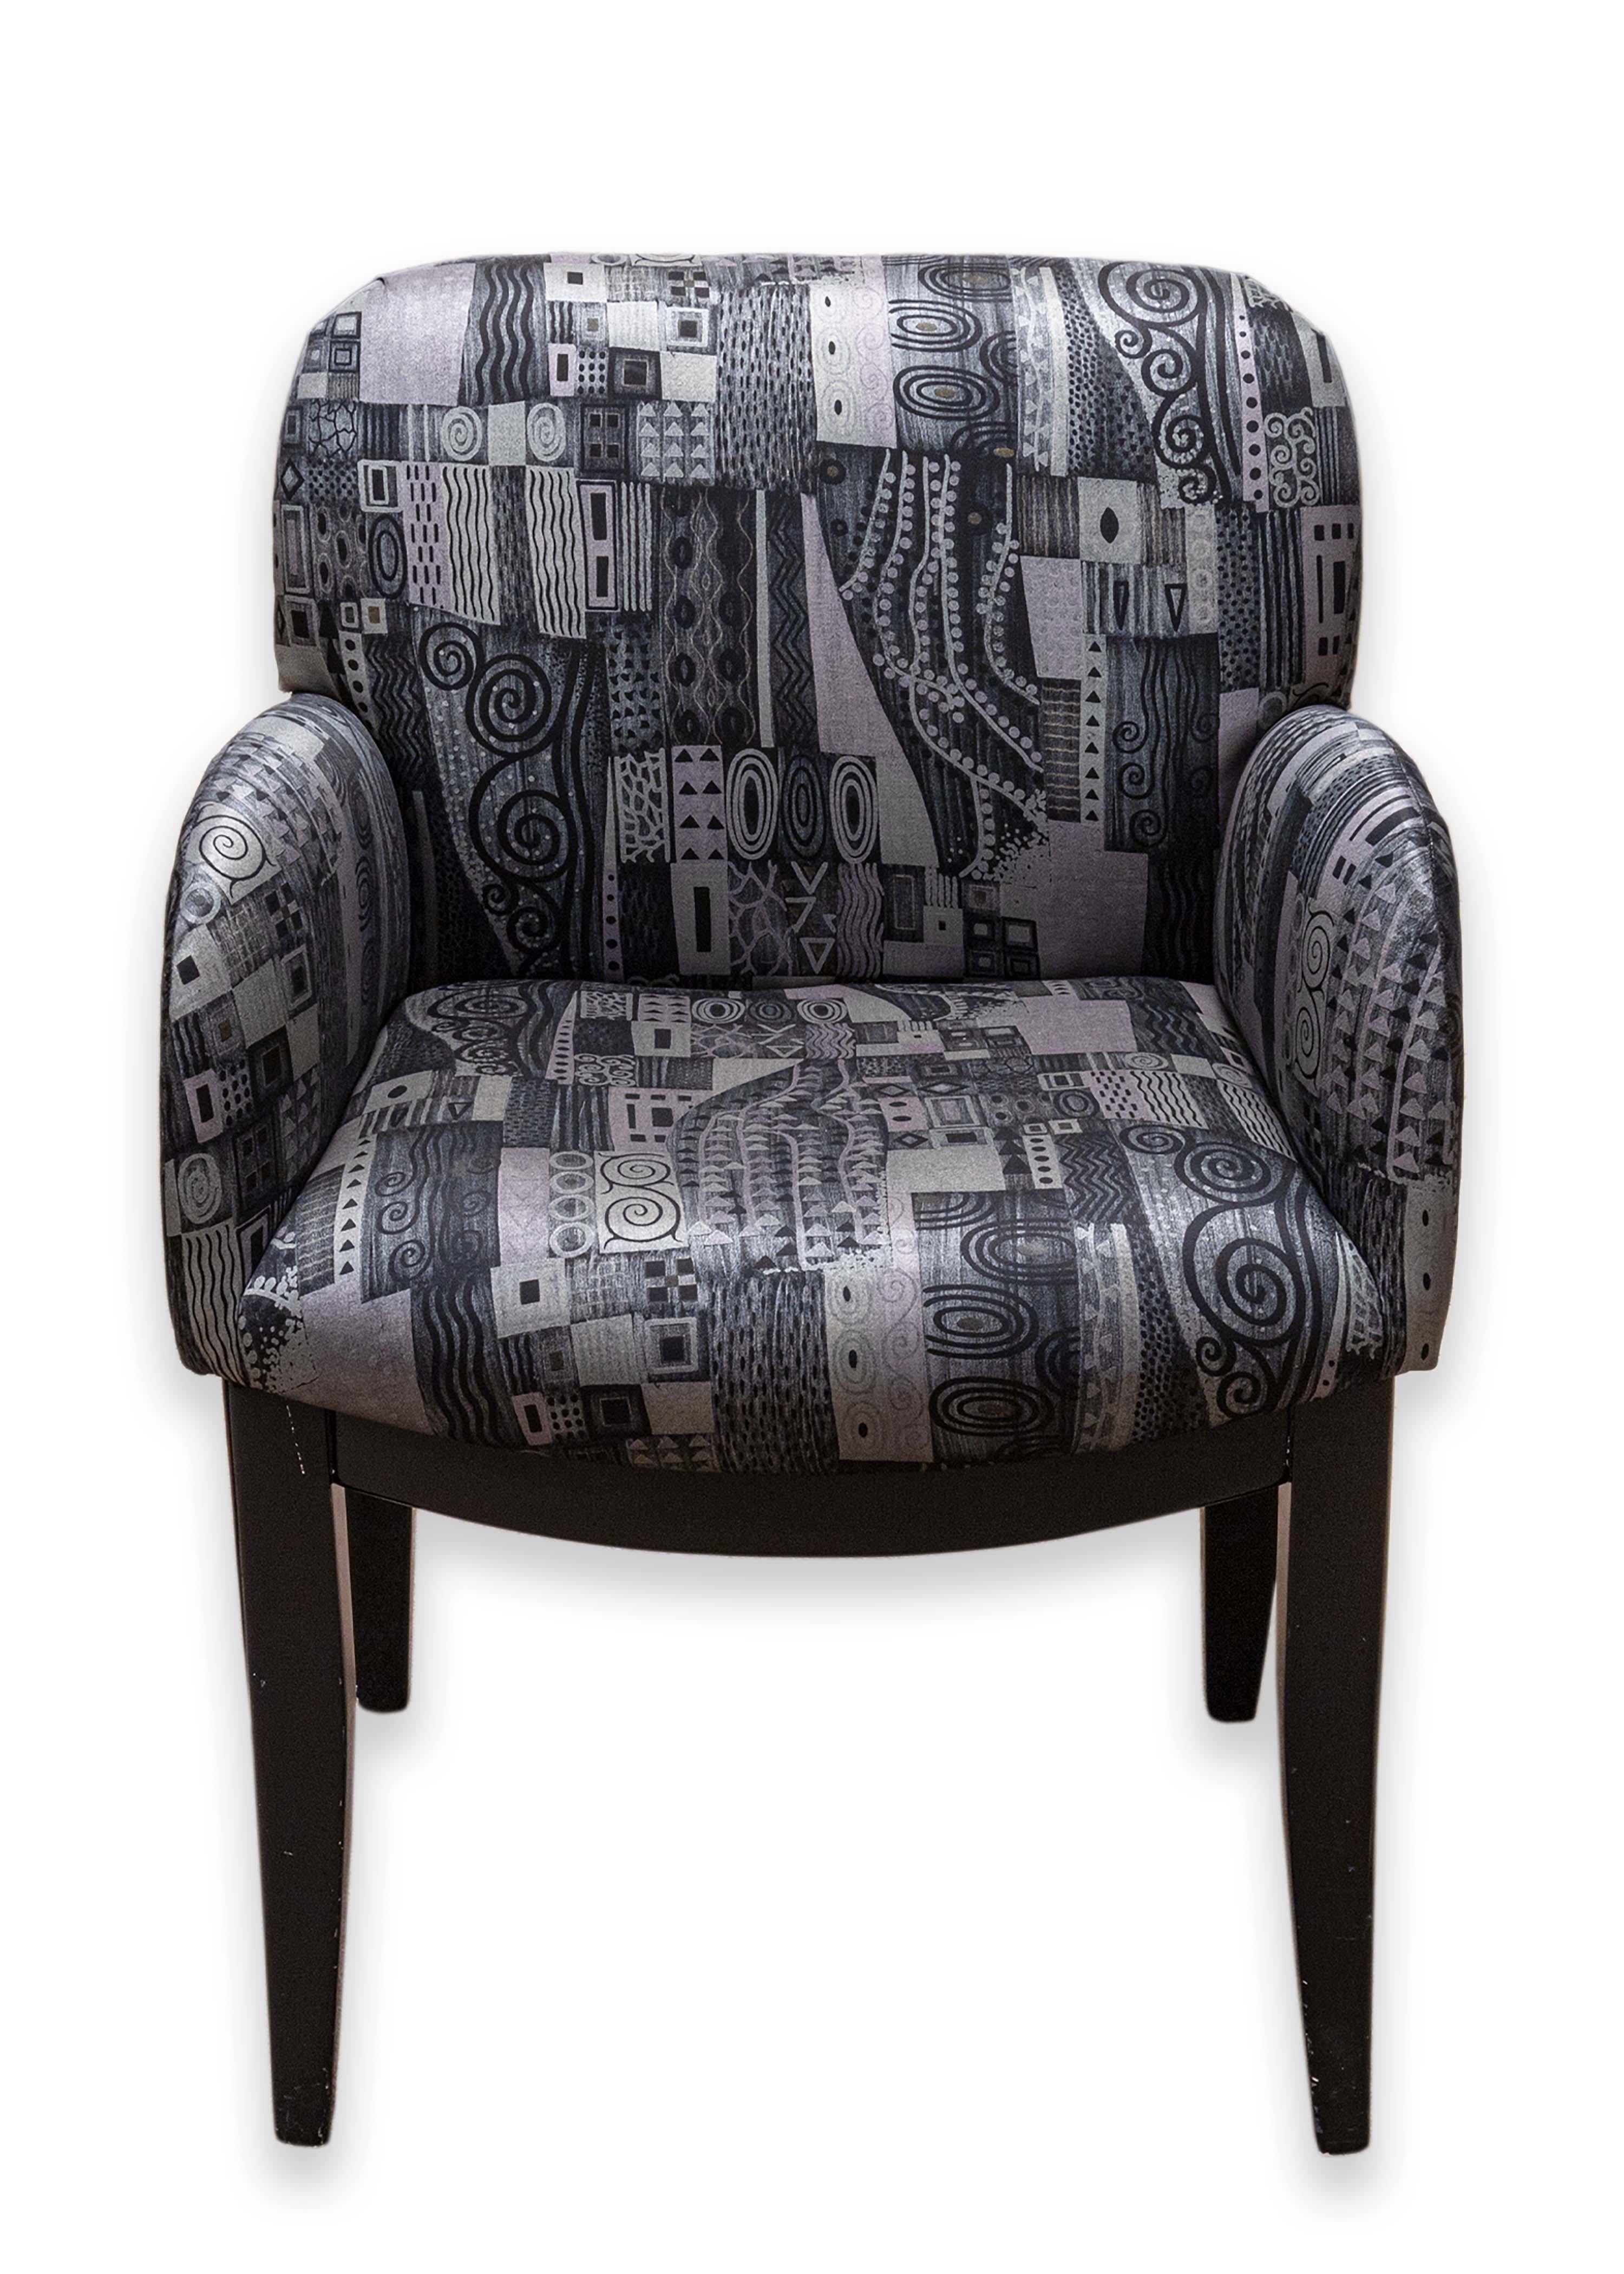 Ein Satz von 4 Sesseln von Milo Baughman für Thayer Coggin. Ein wunderschönes Set aus skurril gemusterten Sesseln. Diese Stühle sind mit einem verspielten Muster in den Farben schwarz/grau/lila/blau versehen. Jeder dieser Stühle ist um den gesamten